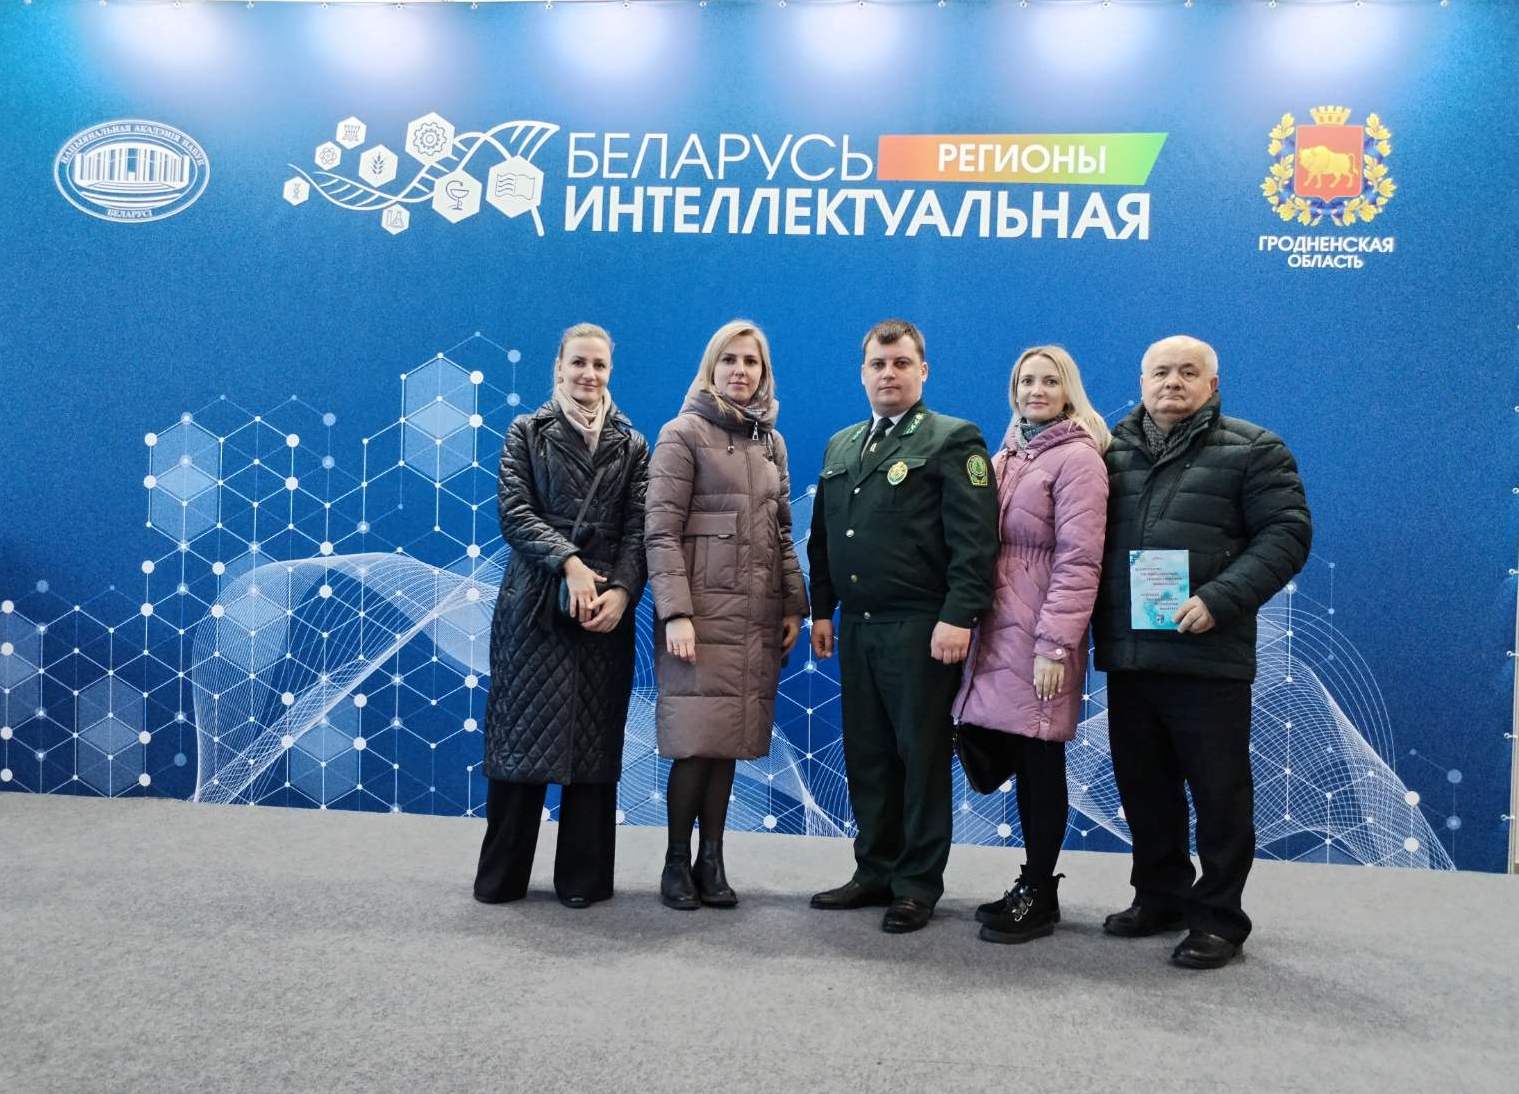 Коллектив лесхоза посетил выставку «Беларусь интеллектуальная»